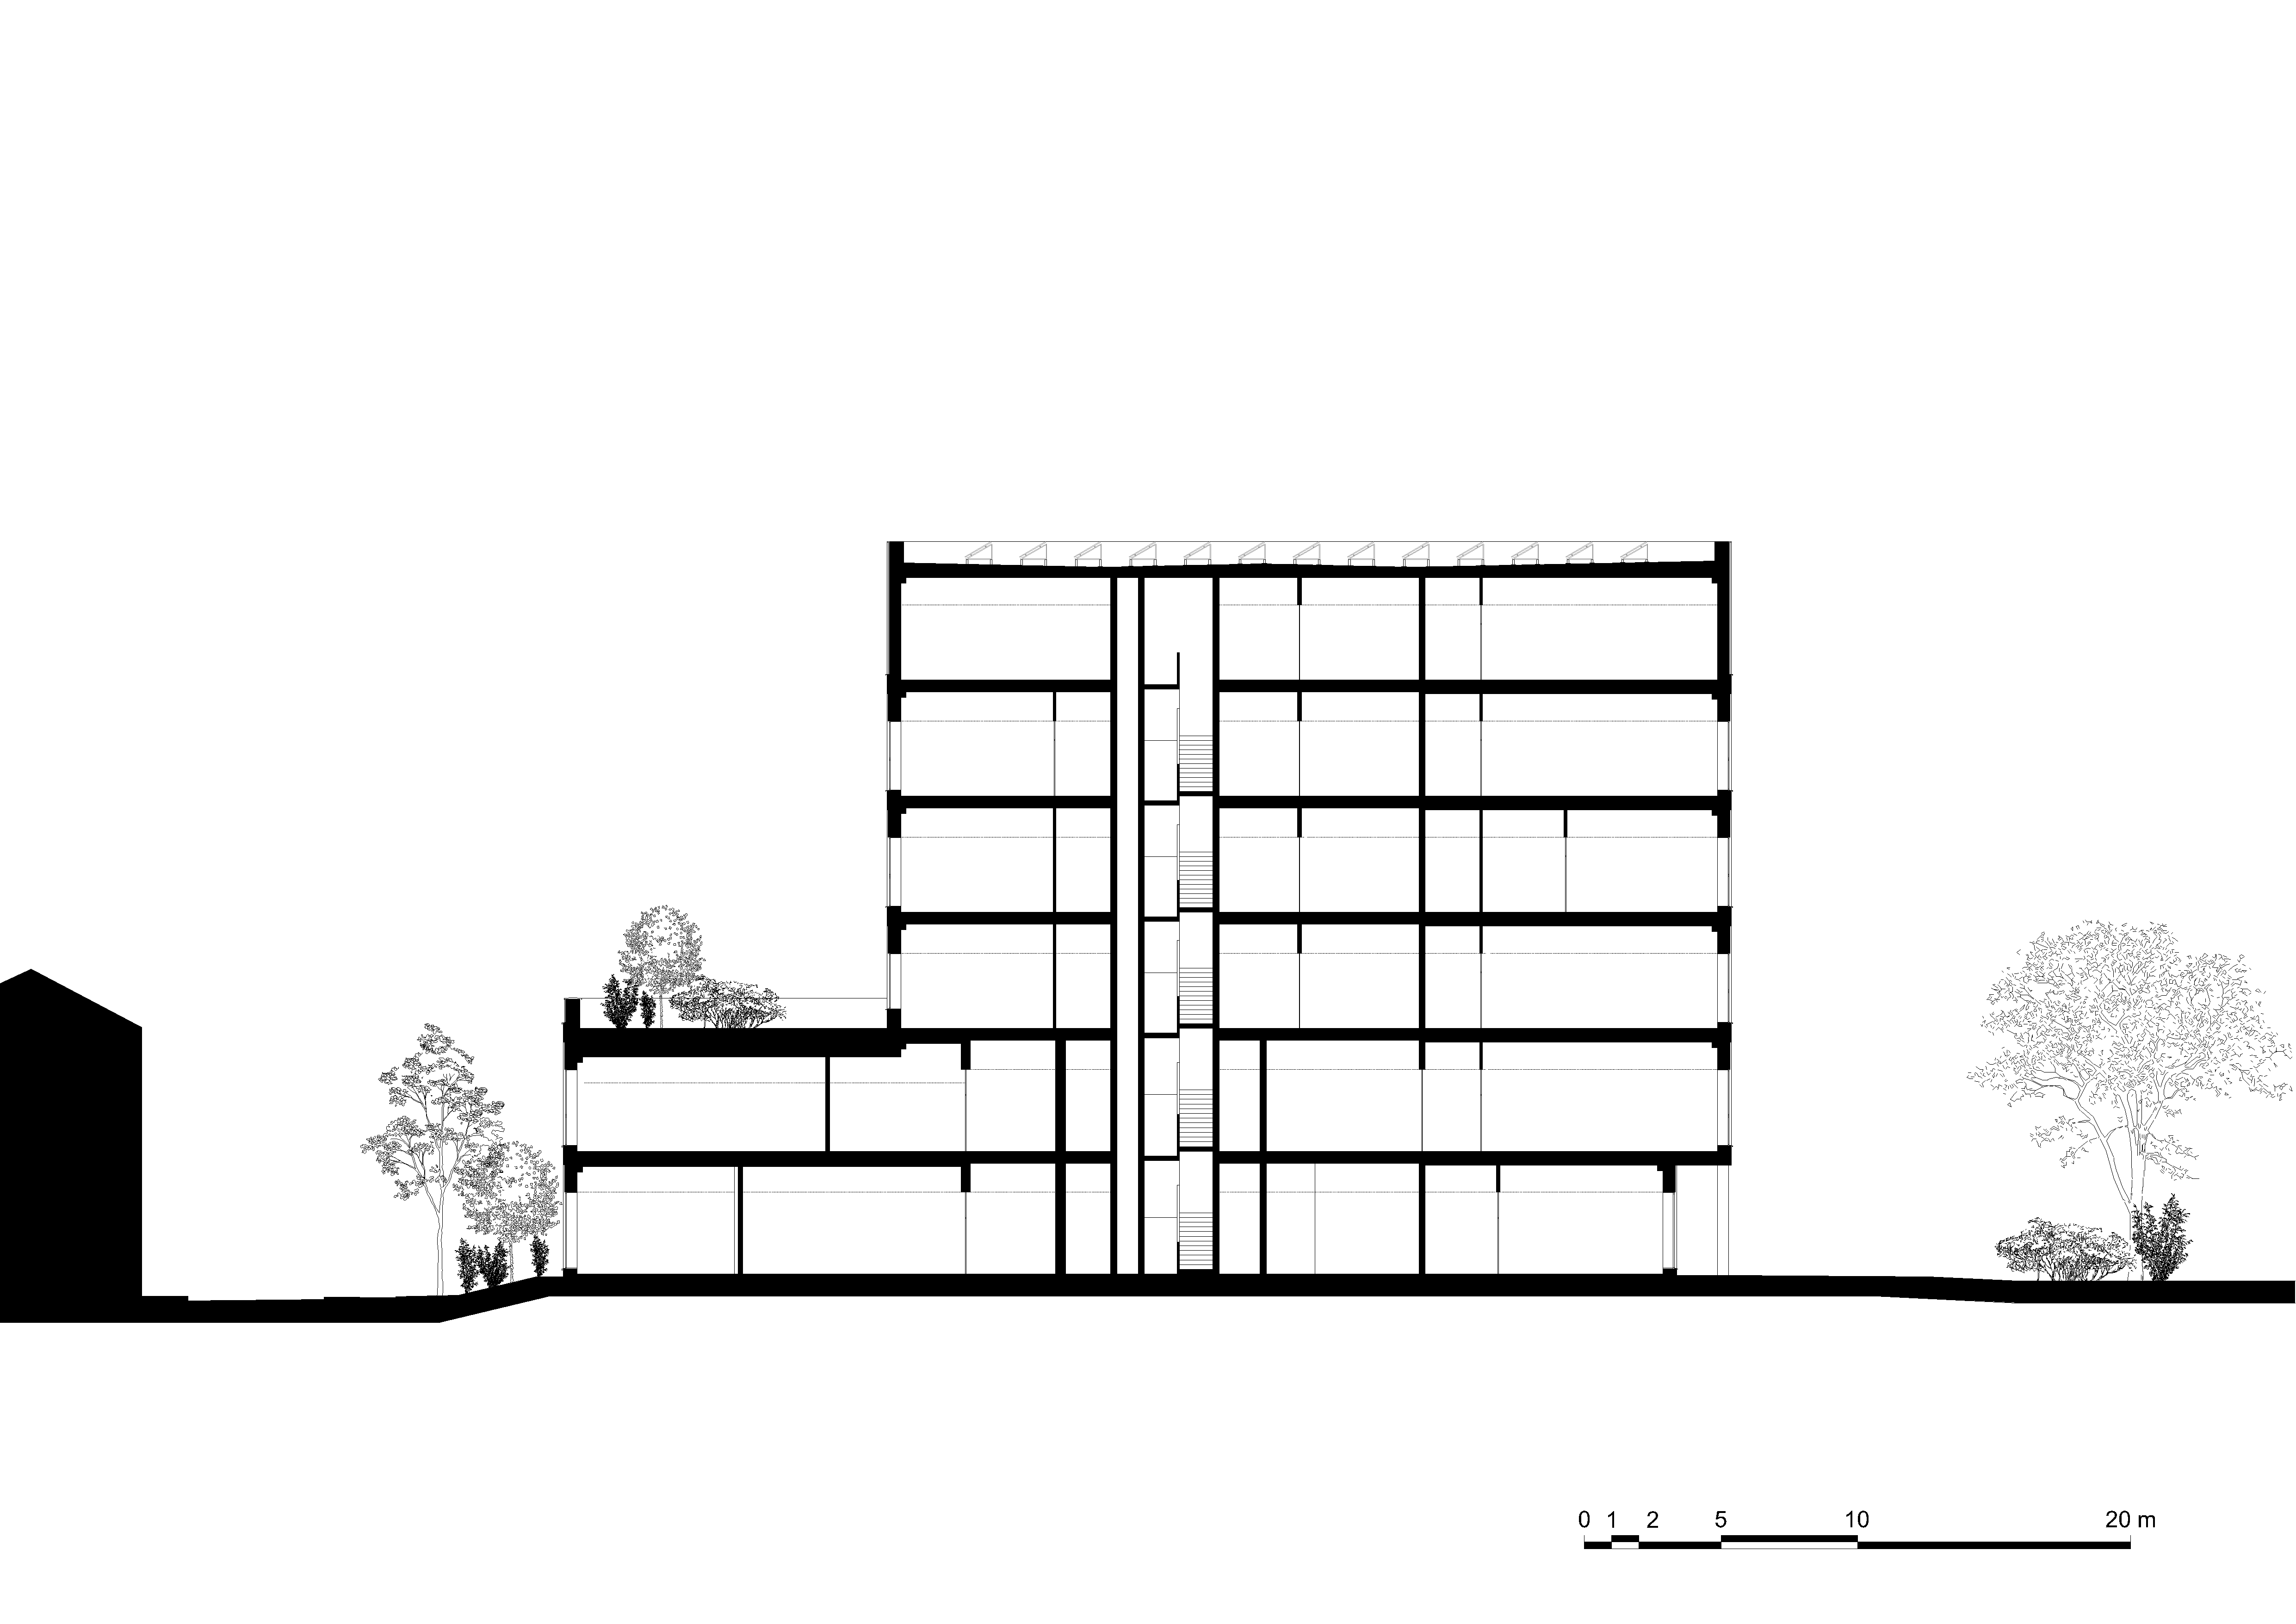 architecture-contemporaine-ecotechnologie-umons-université-auditoires-laboratoires-campus-plaine-nimy-mons-brique-wust-artbuild-reservoir-a-design-build-coupe